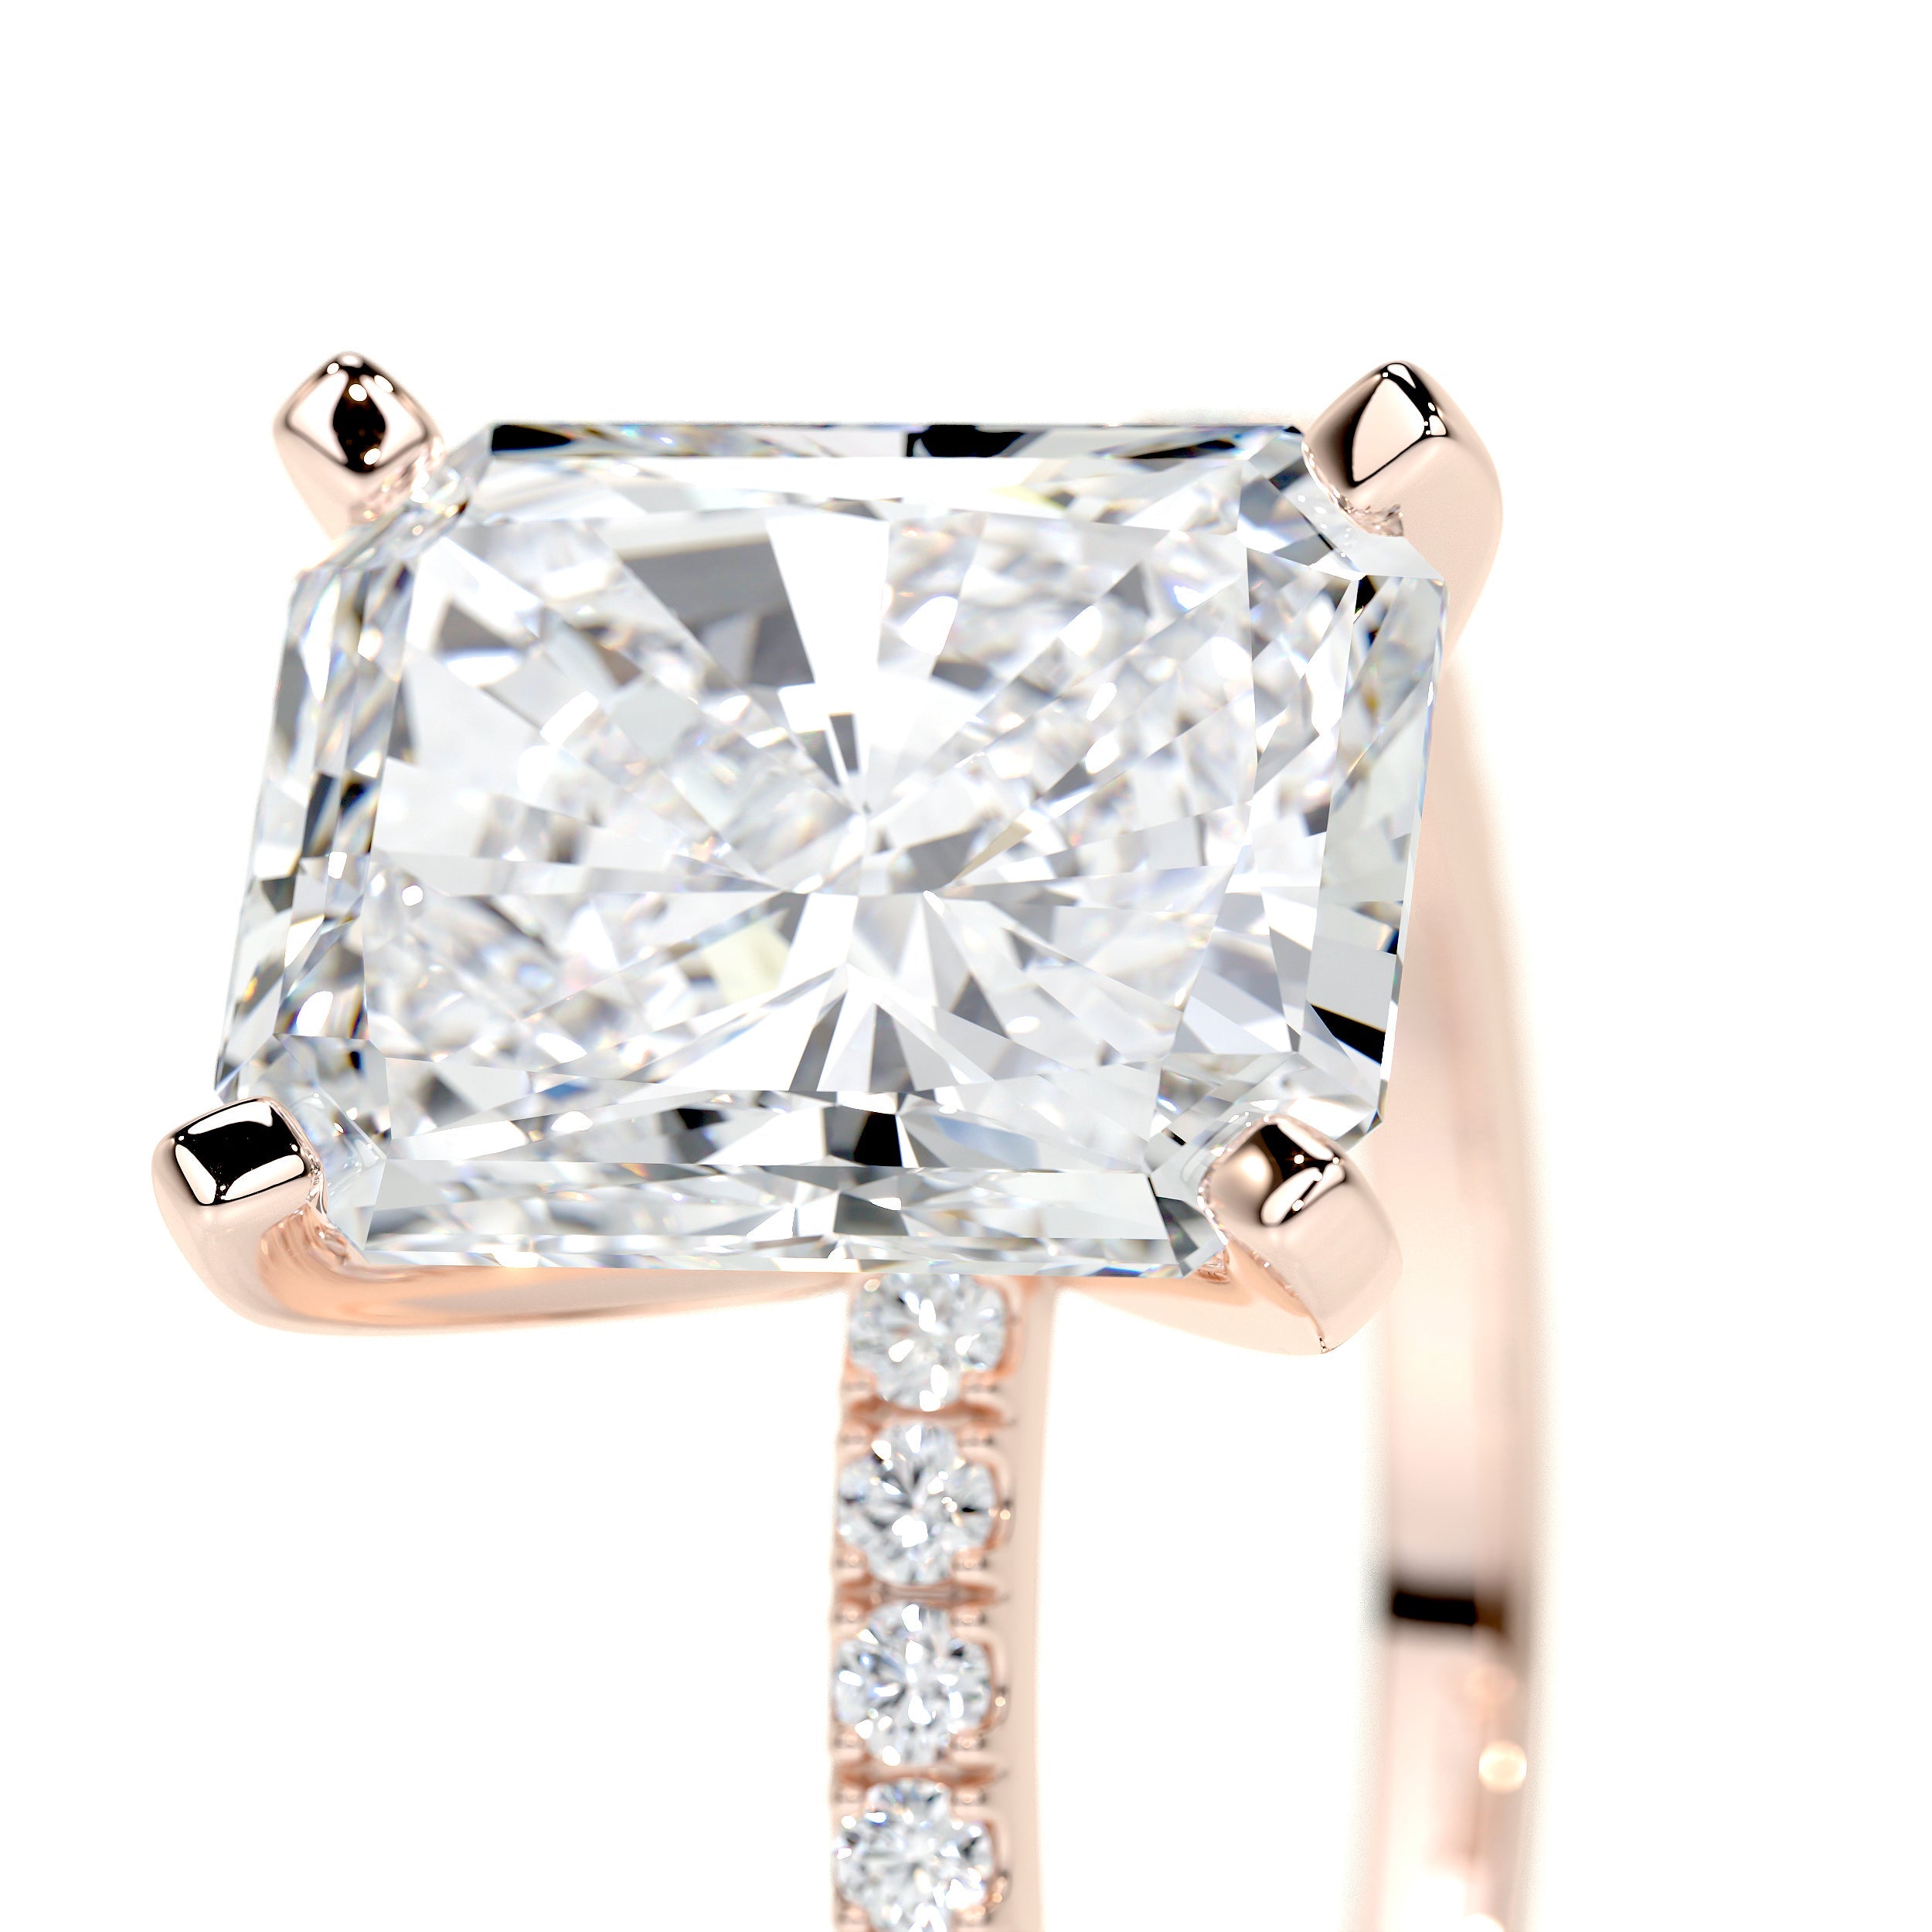 Audrey Lab Grown Diamond Ring   (3.5 Carat) -14K Rose Gold